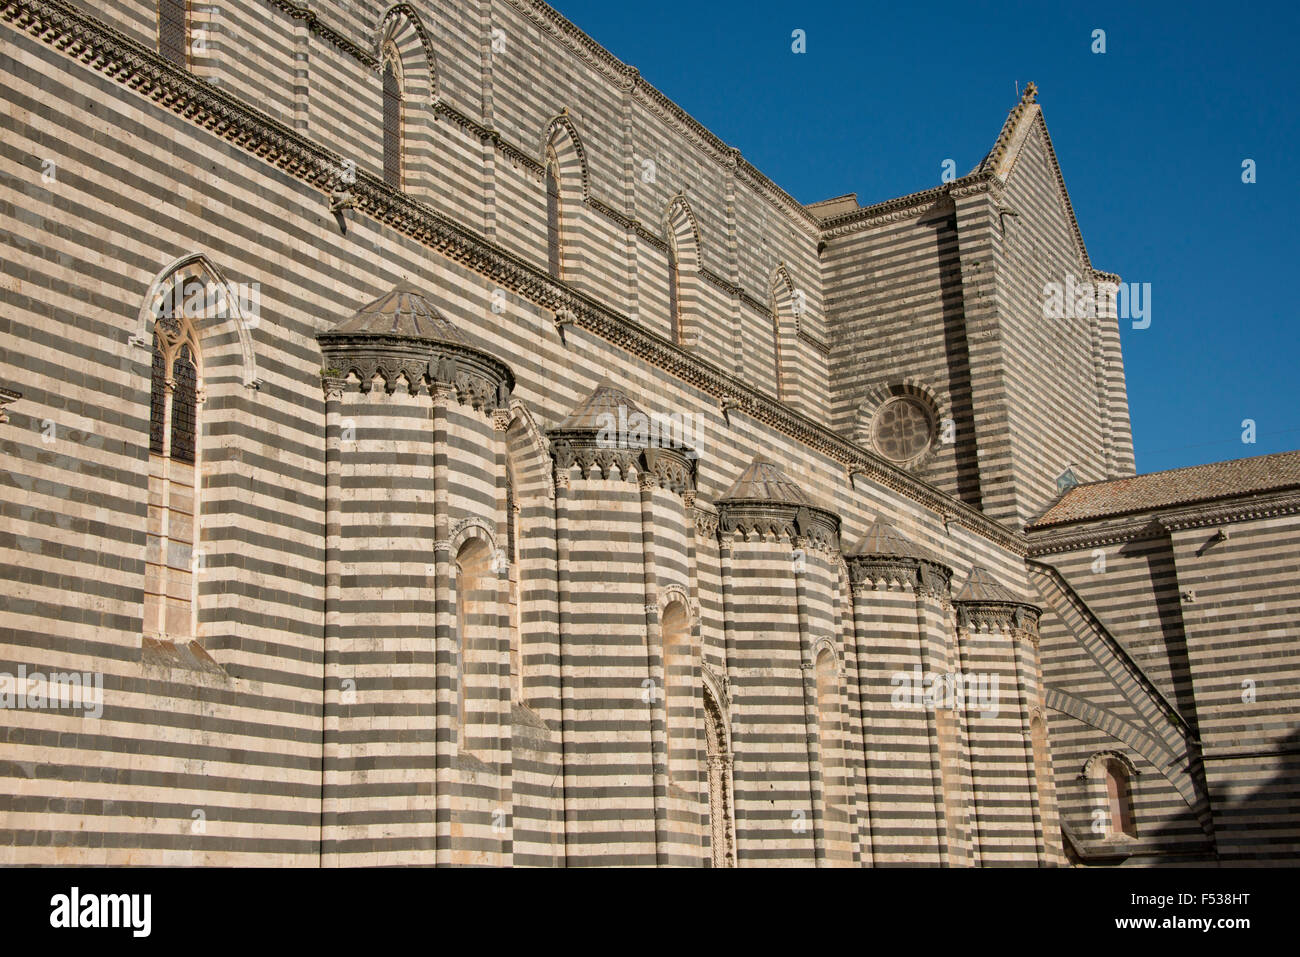 L'Italie, l'Ombrie, Orvieto. La Cathédrale d'Orvieto ou Duomo. Chef-d'œuvre gothique du 13ème siècle, l'un des meilleurs bâtiments Gothique en Italie. Détail de noir et blanc typique de la construction. Banque D'Images